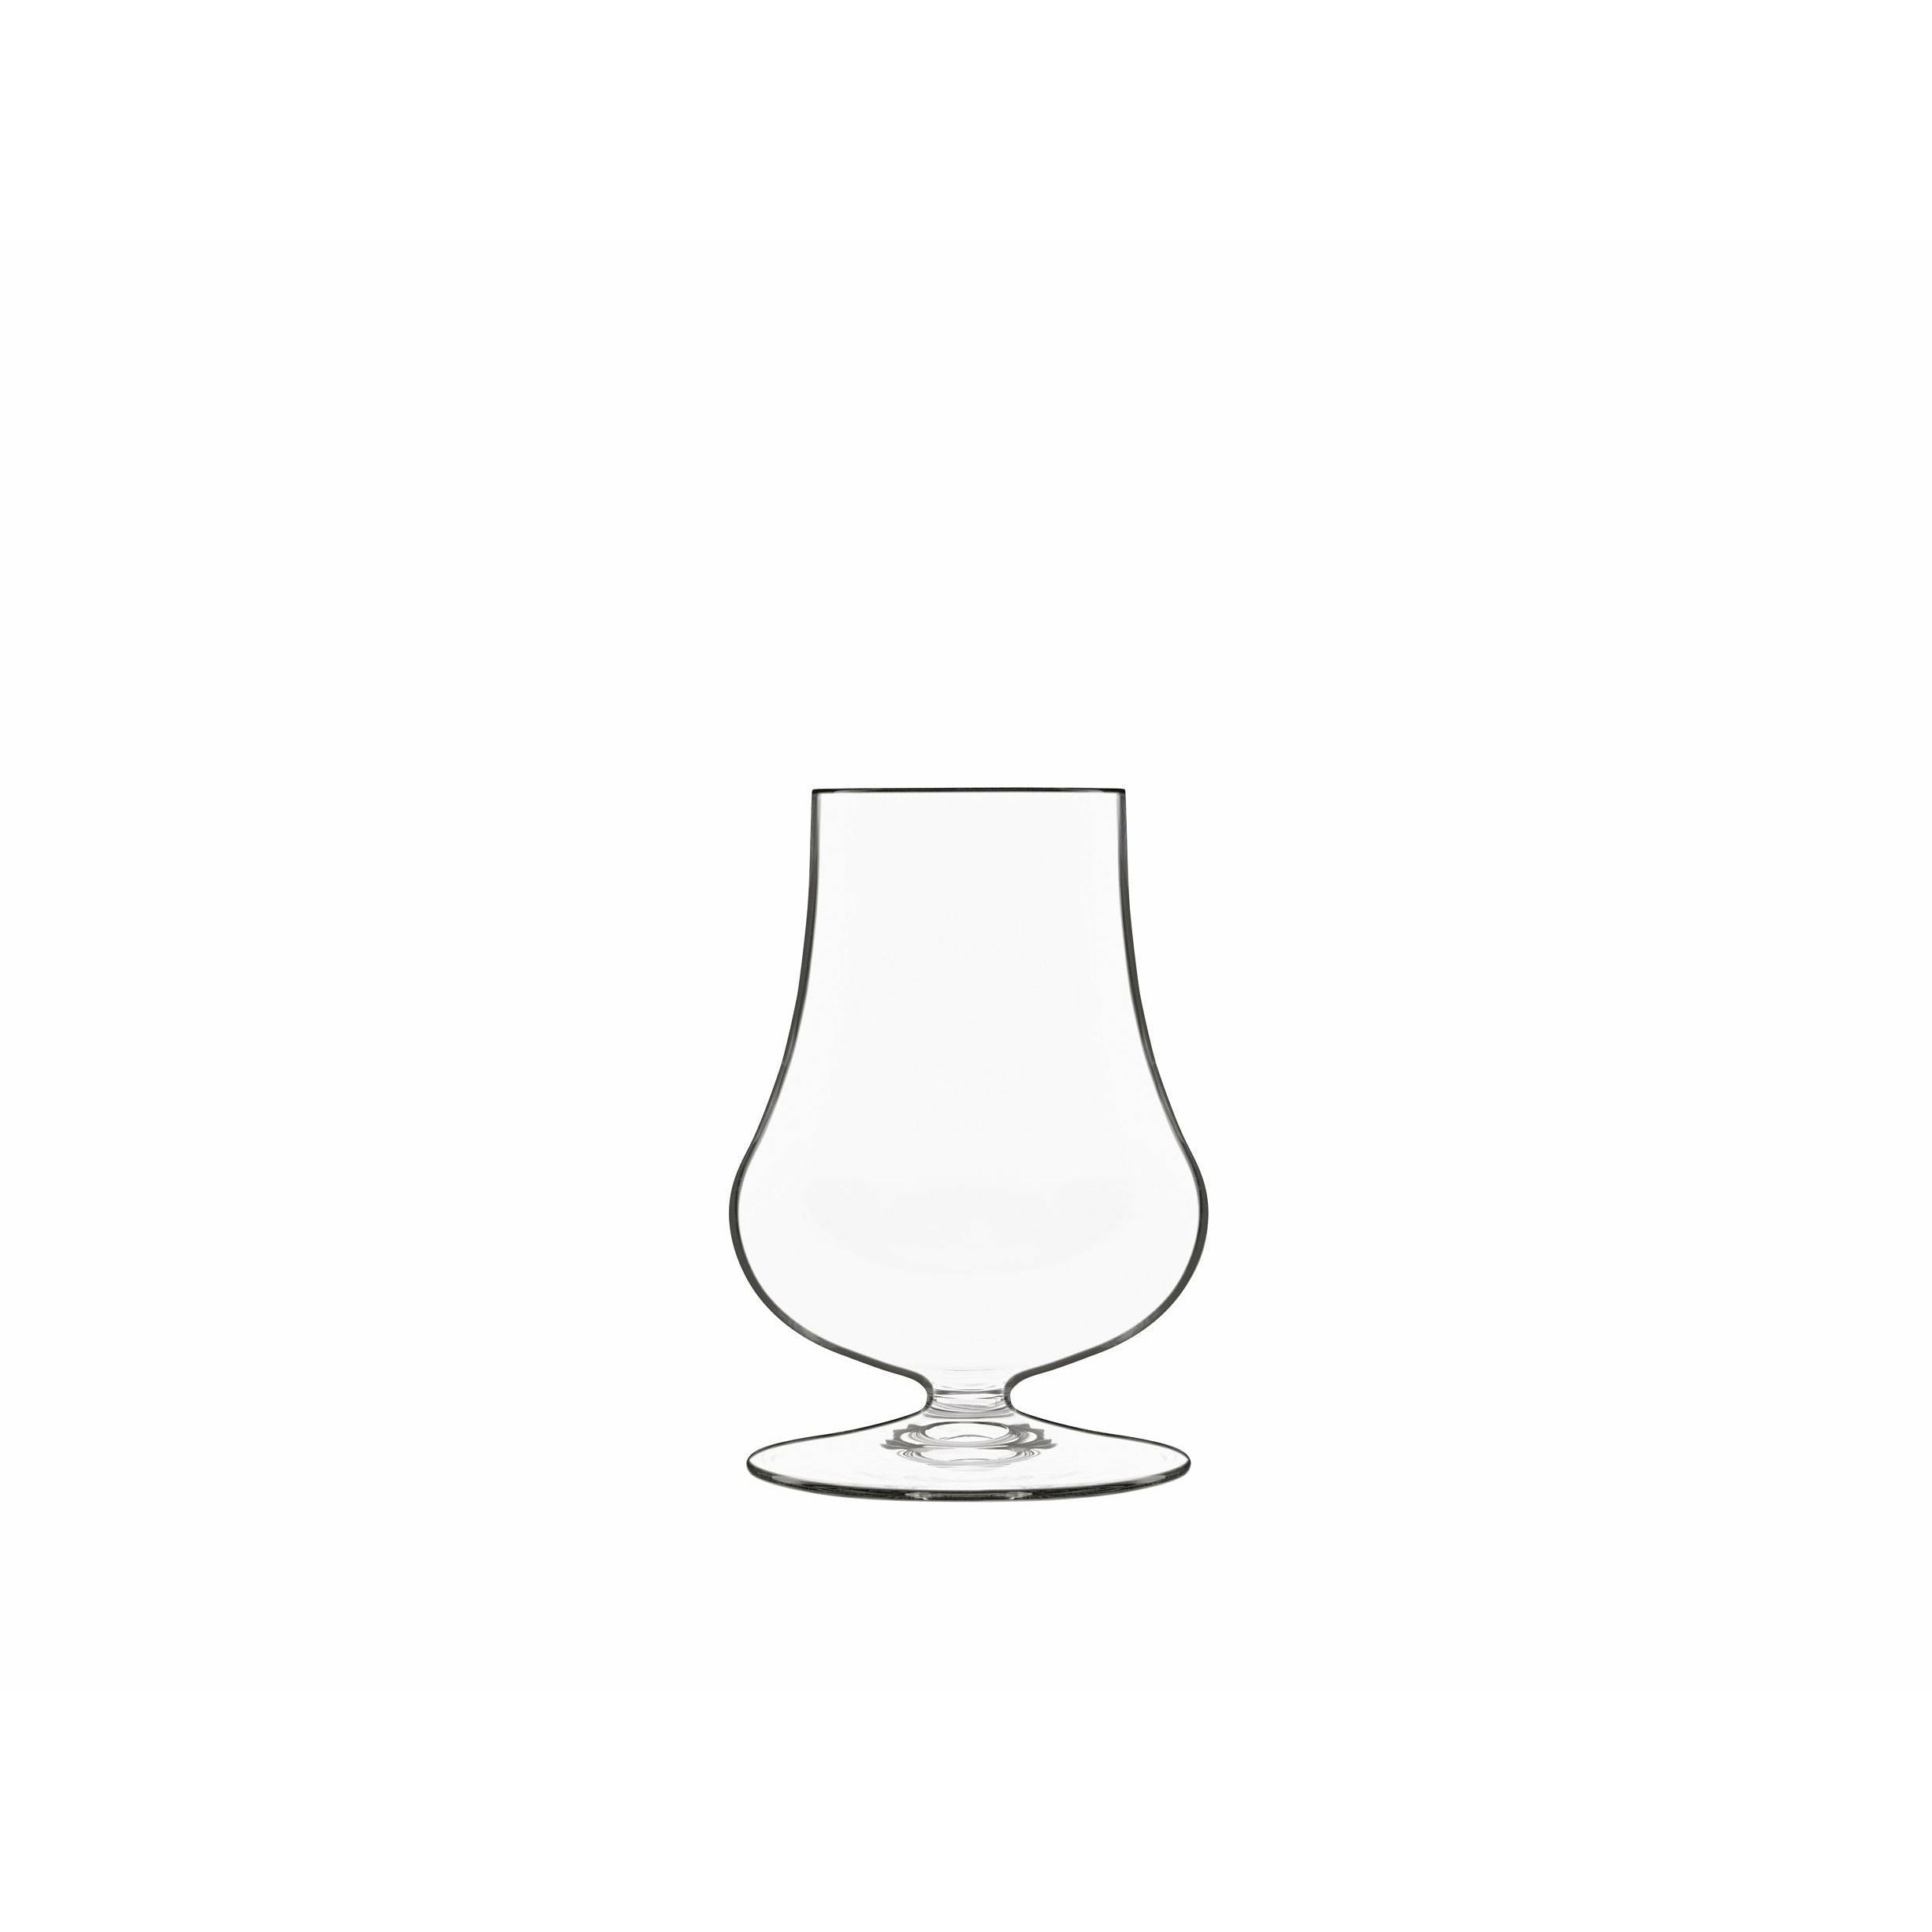 Luigi Bormioli Tentazioni Spirits Glass/Whisky Glass To Taste, Set Of 6